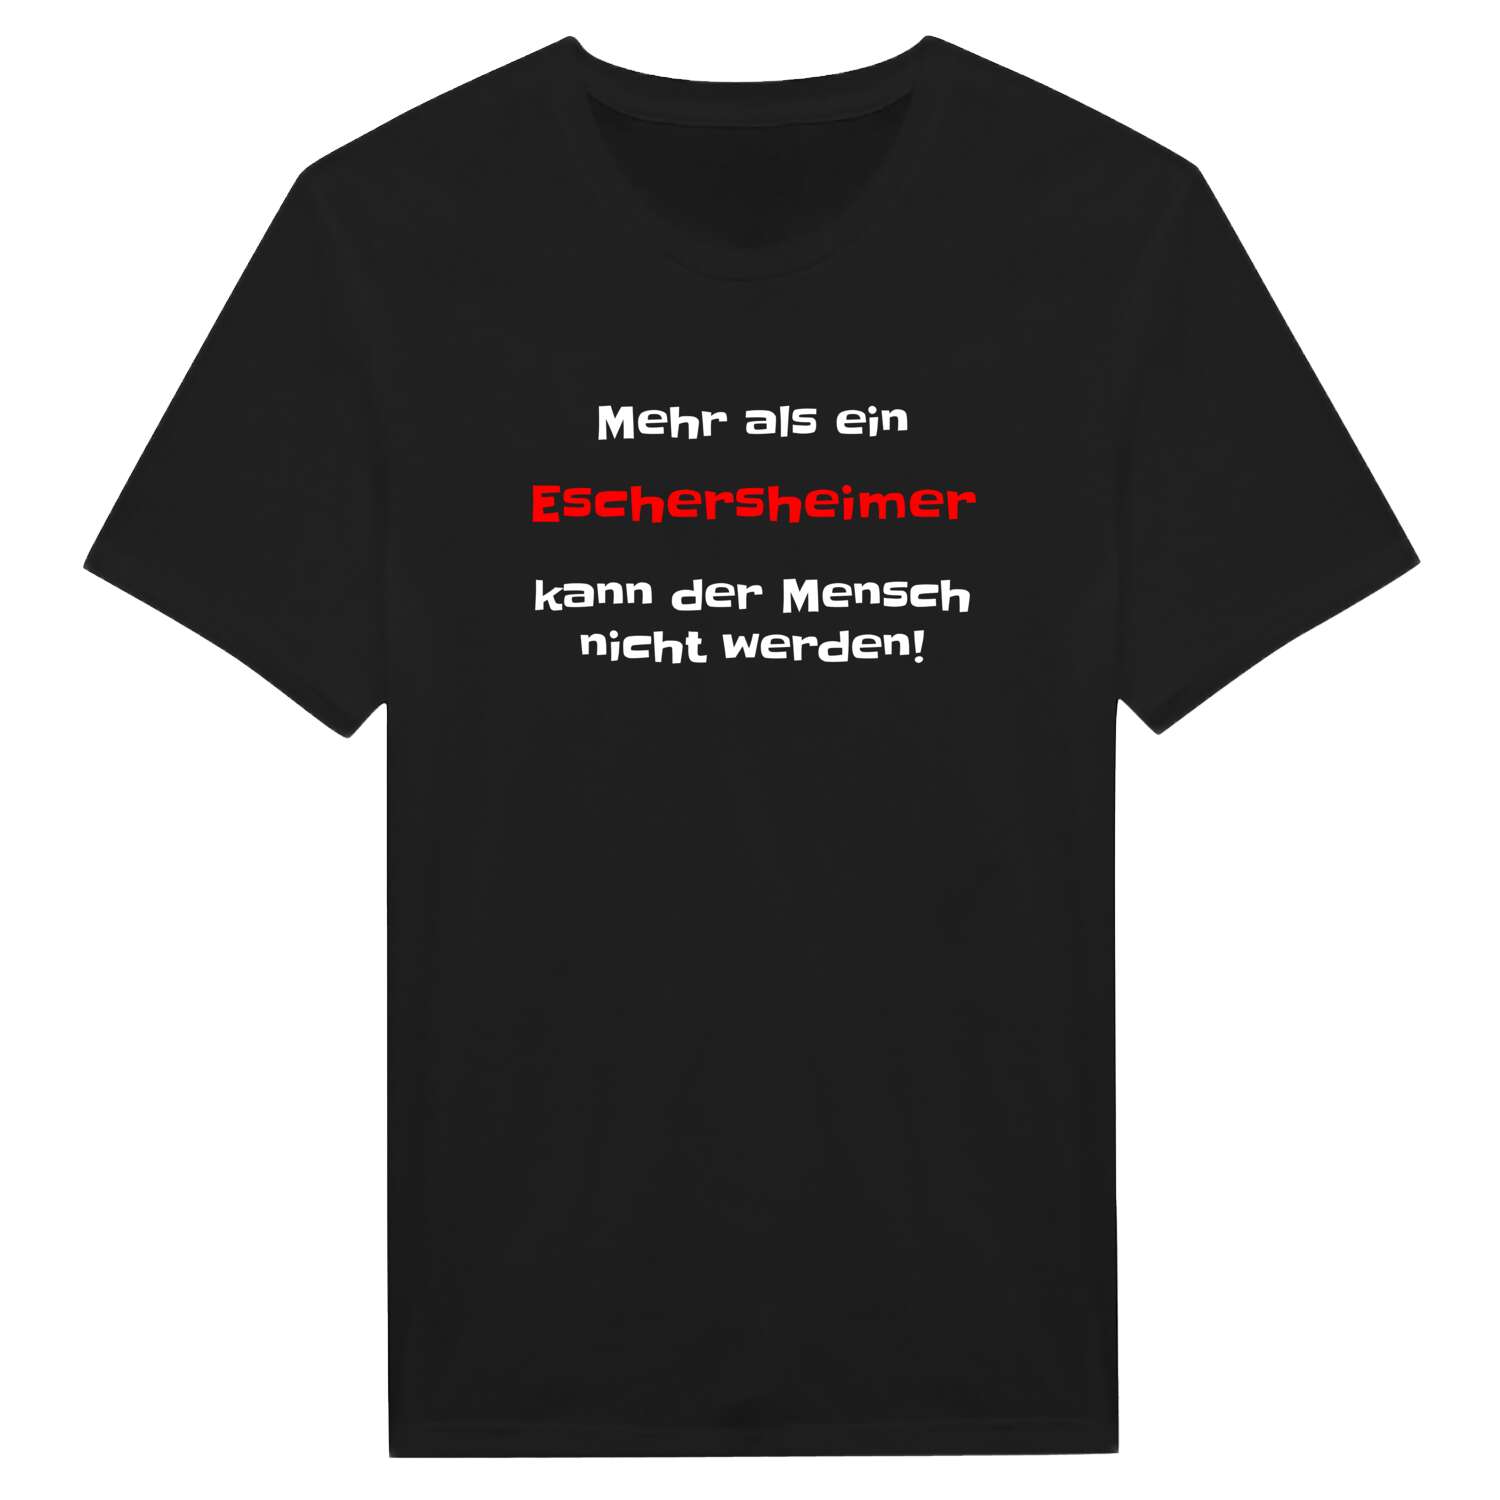 Eschersheim T-Shirt »Mehr als ein«